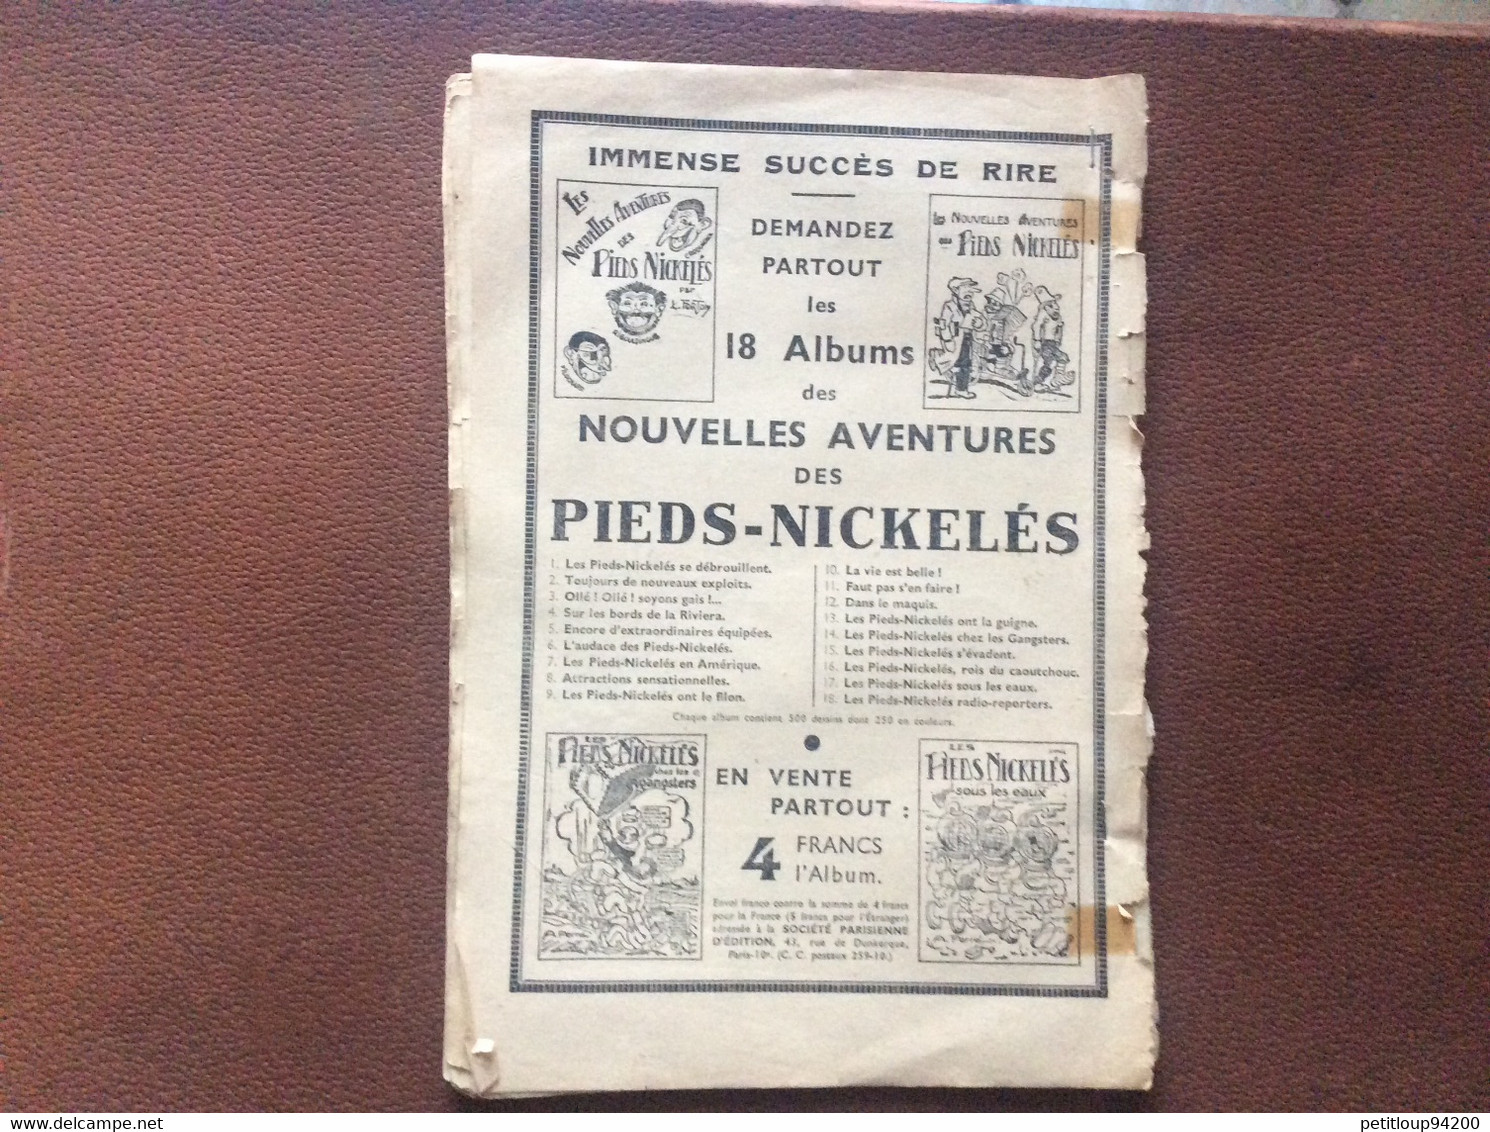 Les Nouvelles Aventures Des PIEDS-NICKELÉS L’Audace Des Pieds-Nickeles No 6 FORTON Société Parisienne D’Edition 1930 - Pieds Nickelés, Les